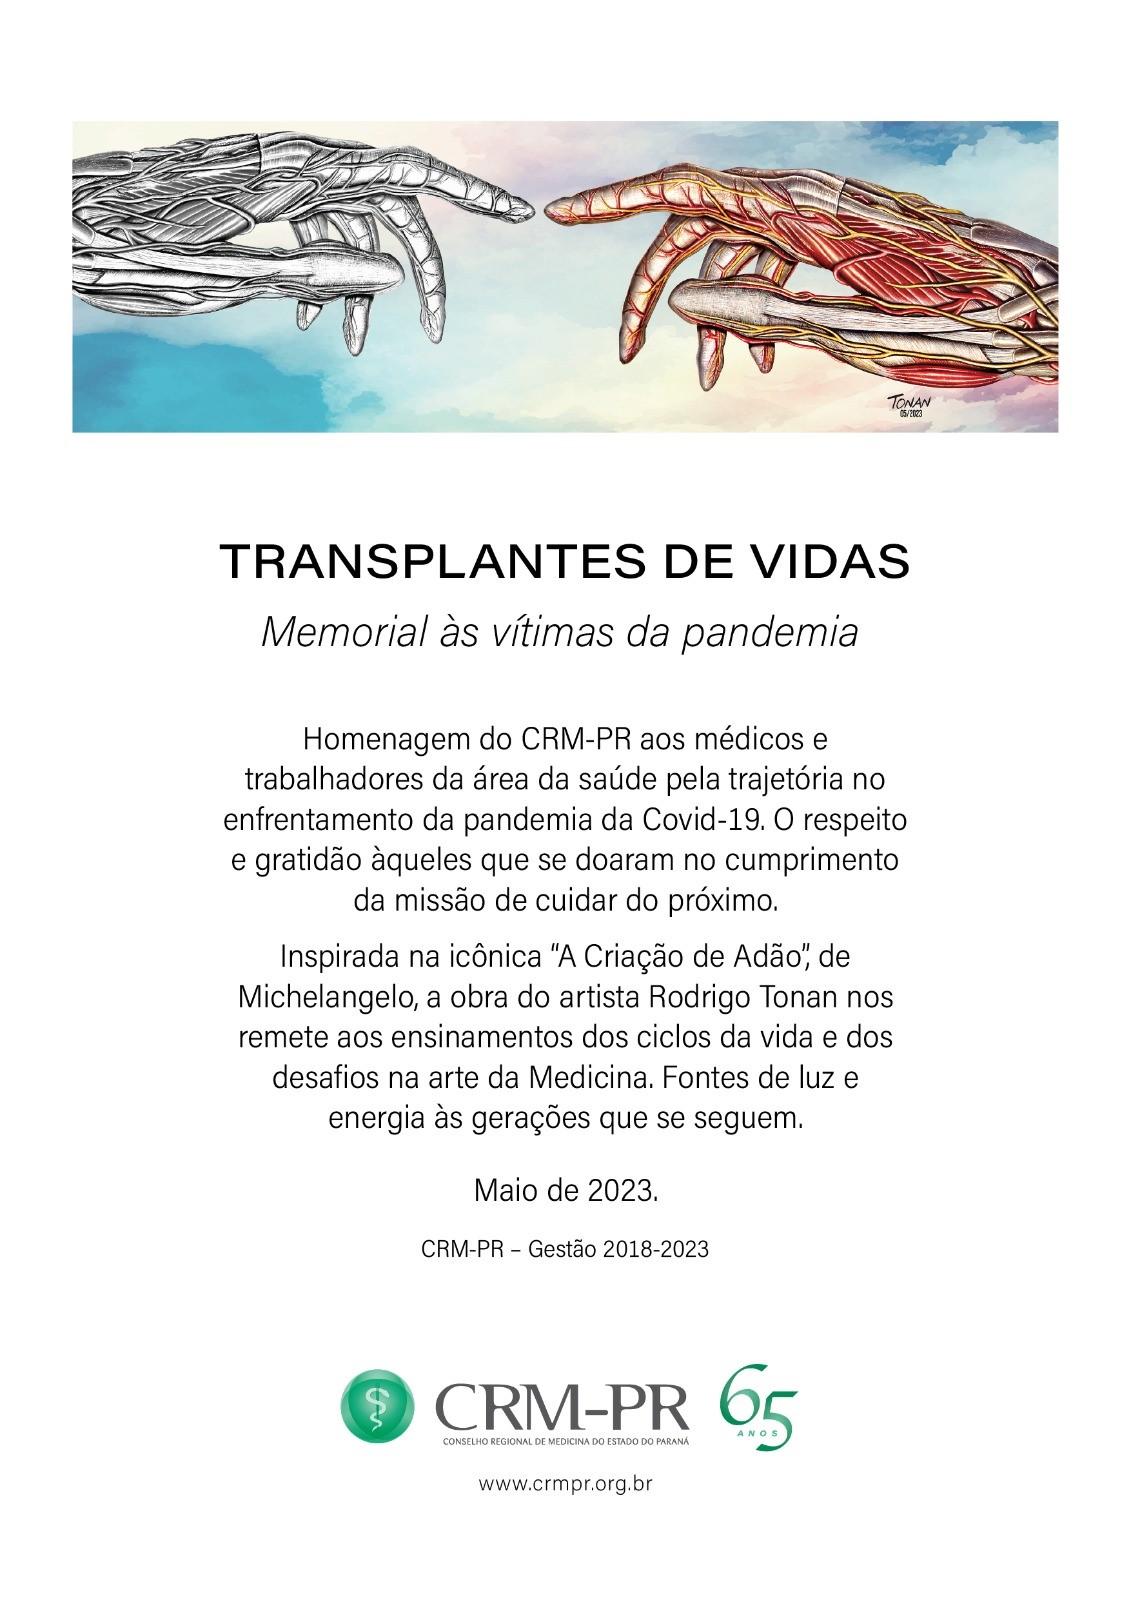 painel Transplante de vida, Rodrigo Tonan